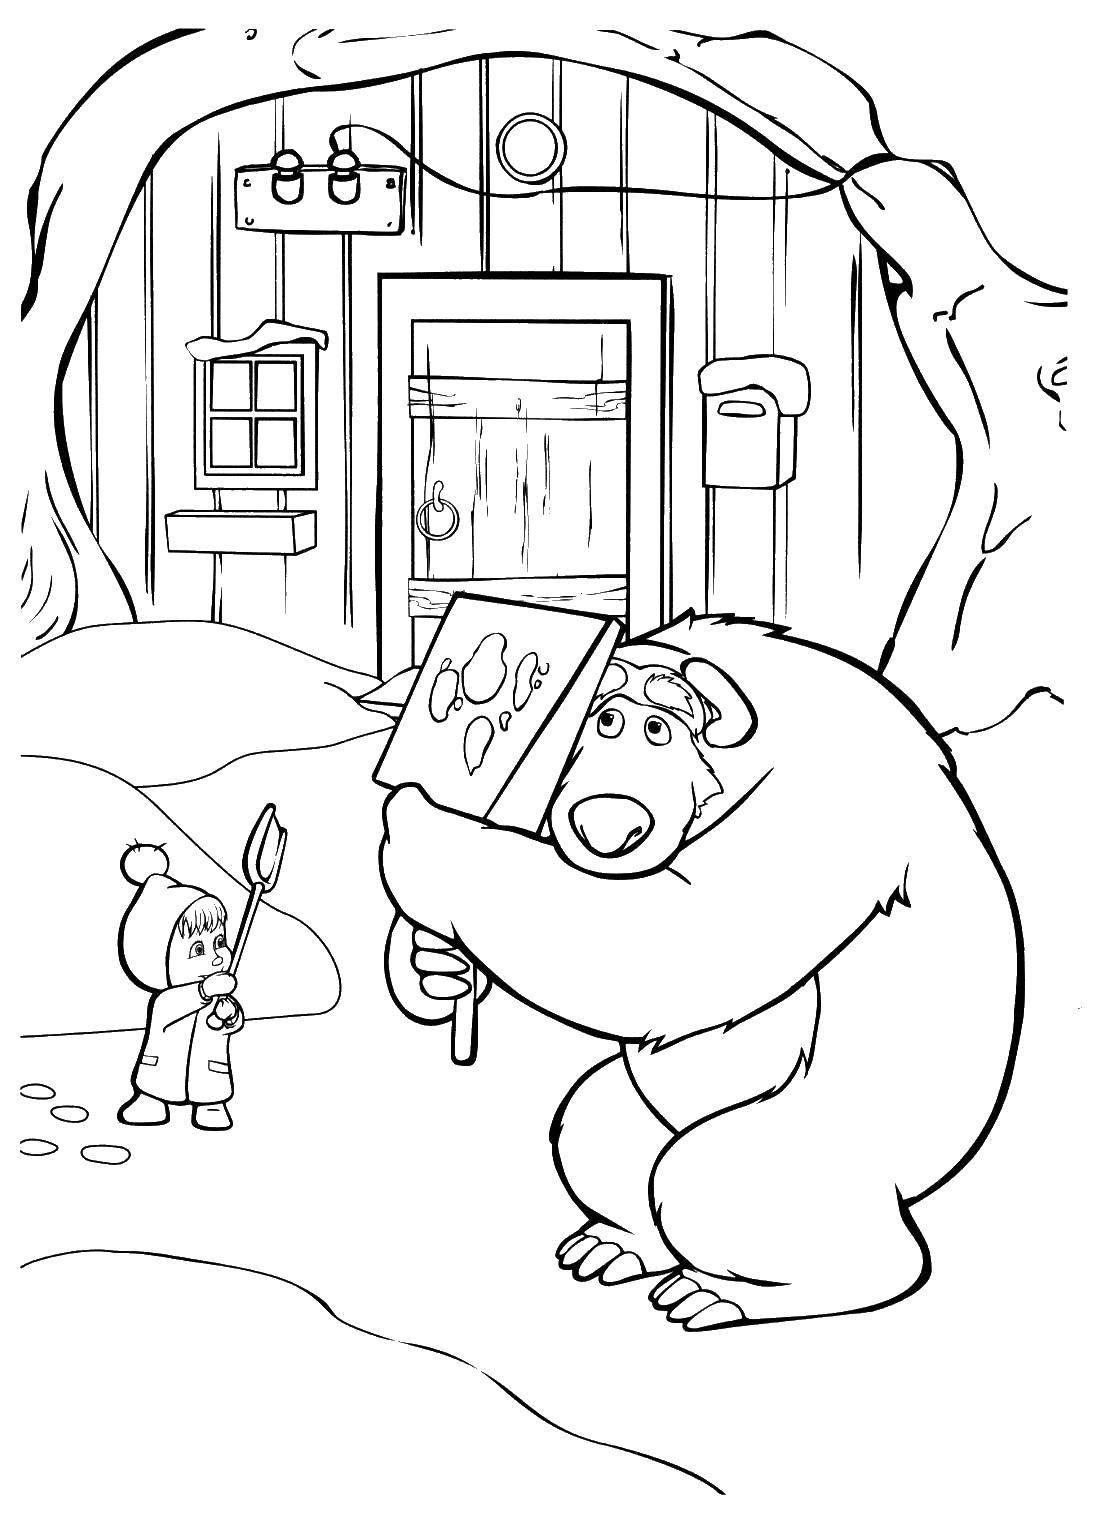 Раскраски для детей про озорную Машу из мультфильма Маша и медведь  Маша и медведь зимой